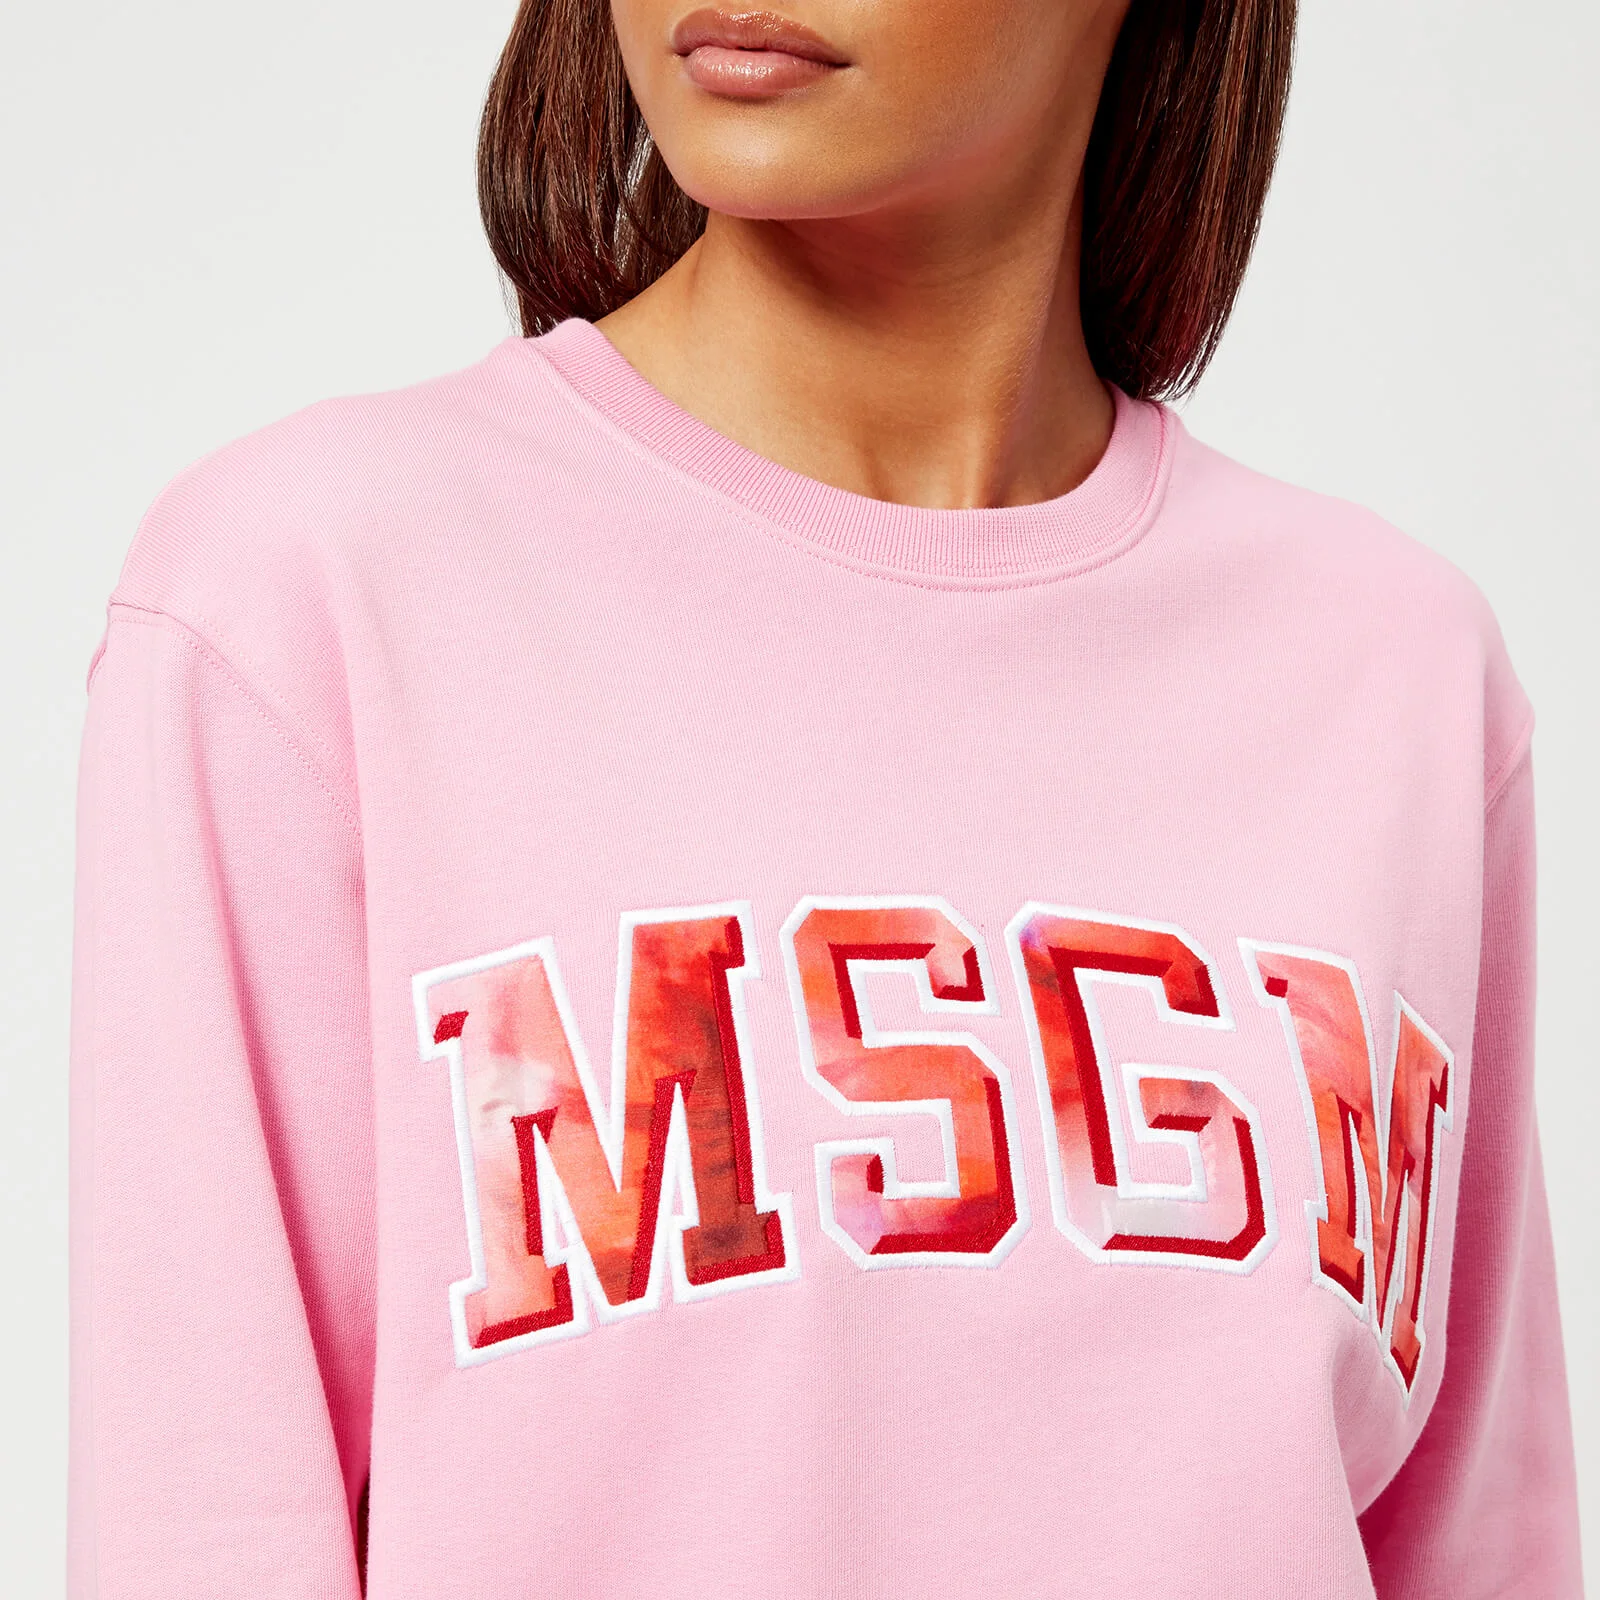 MSGM Women's Logo Sweatshirt - Pink Image 1